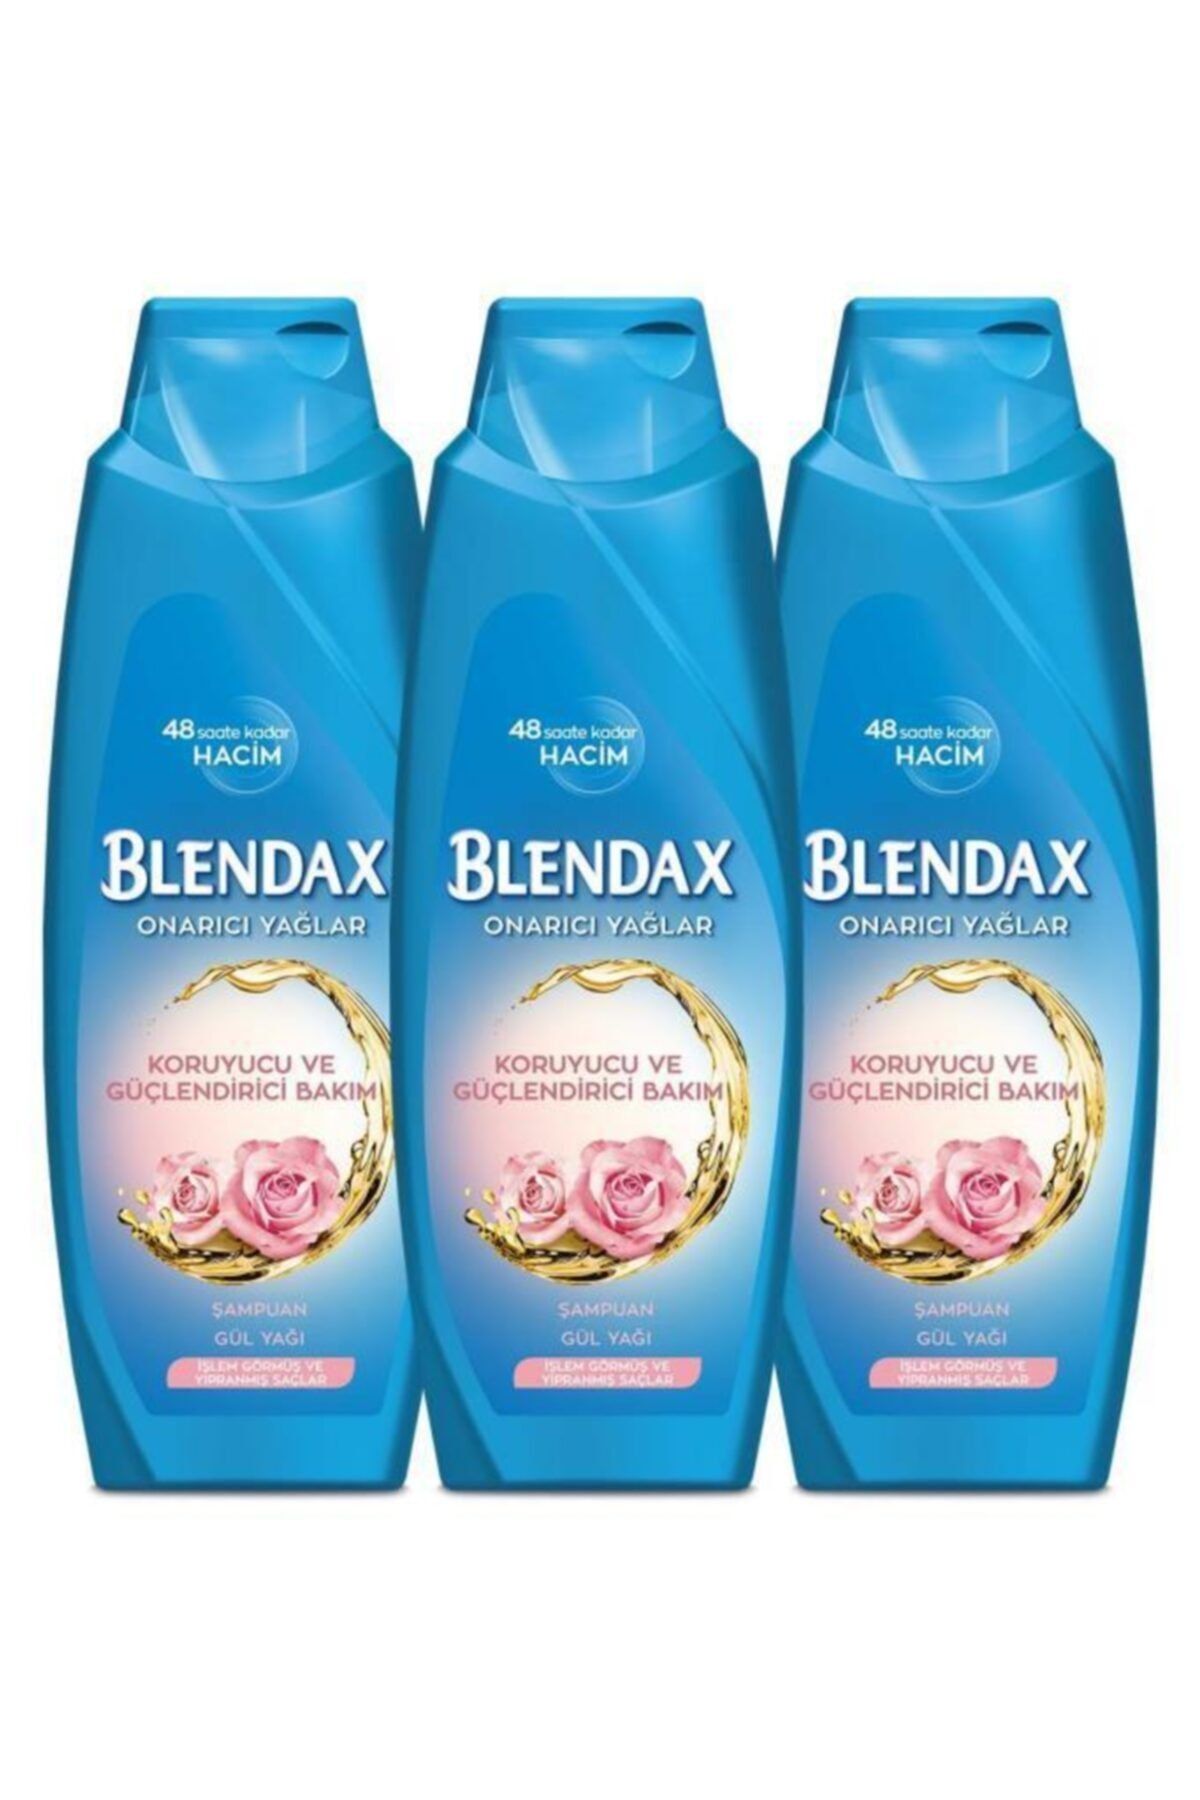 Blendax Koruyucu Ve Güçlendirici Bakım - Onarıcı Yağlar Gül Yağı Şampuan 500 ml X 3 Adet